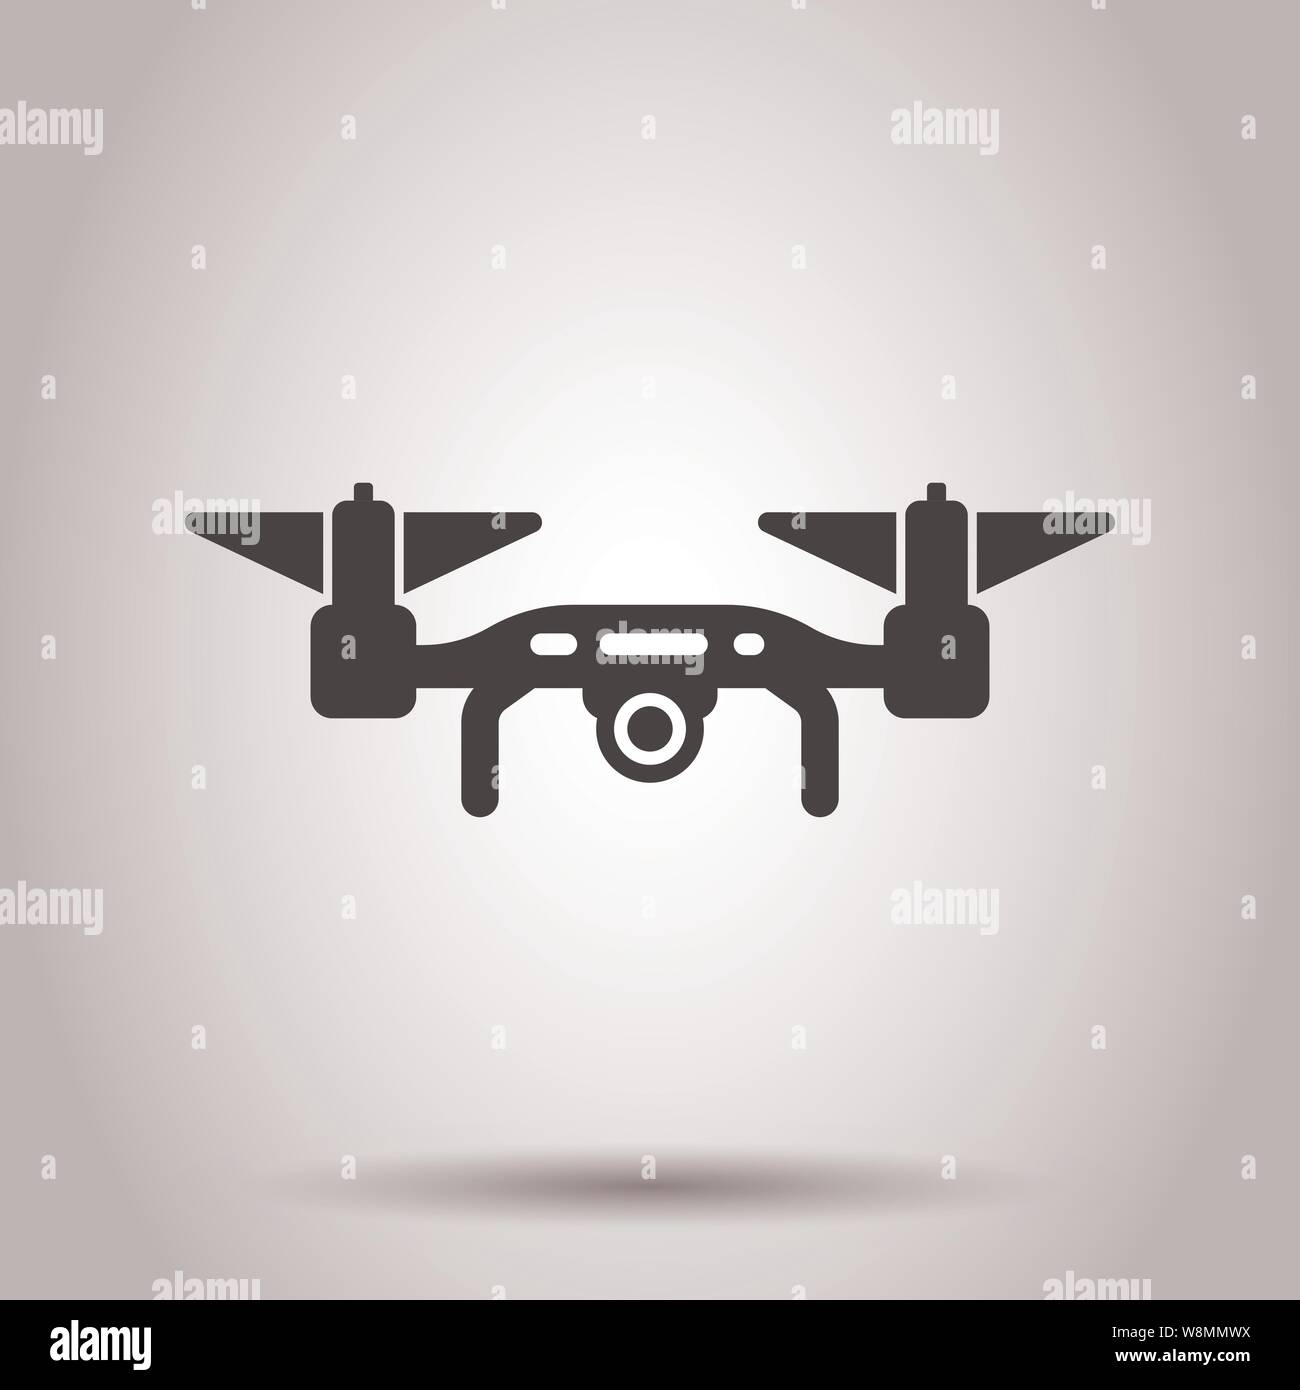 Icona del Drone in stile trasparente. Telecamera volanti illustrazione vettoriale su sfondo isolato. Volo il concetto di business. Illustrazione Vettoriale